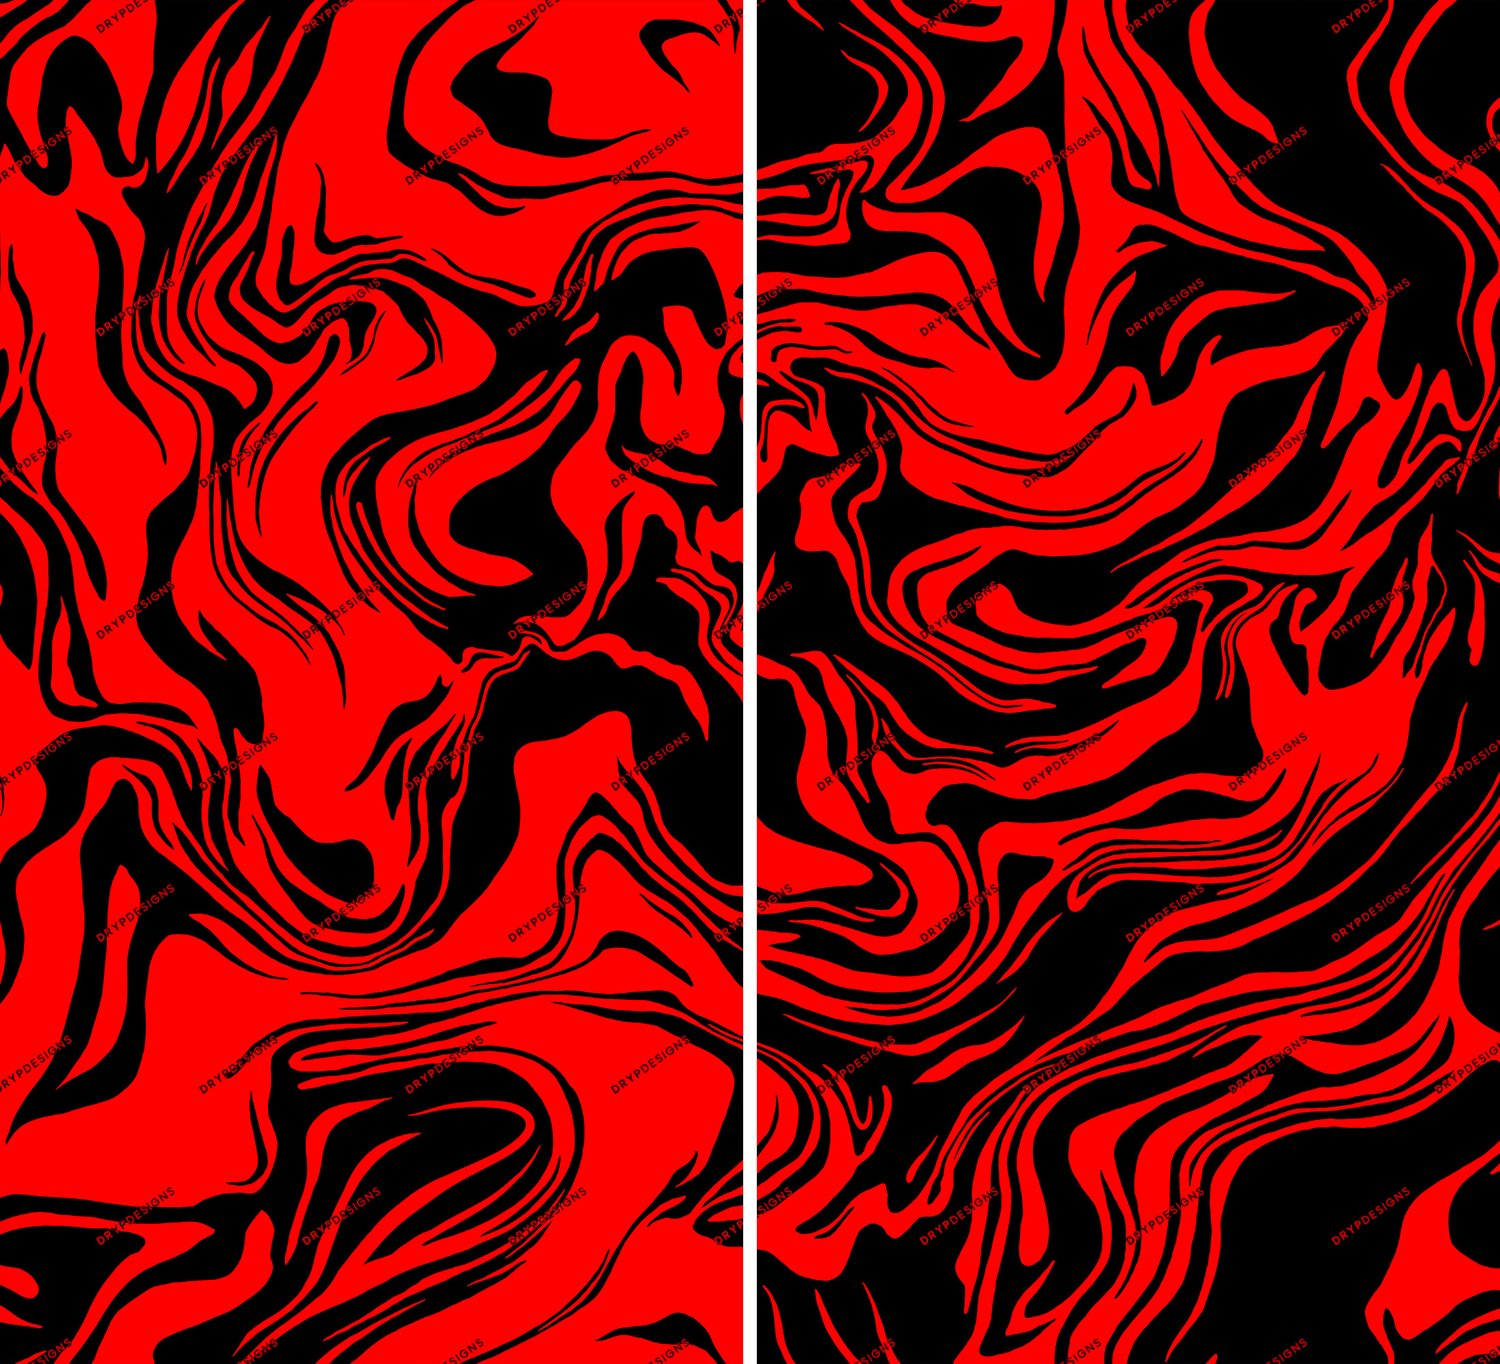 Sự pha trộn độc đáo giữa màu đen và đỏ xoáy trên nền đá hoa tạo nên sự bí ẩn và hấp dẫn cho bức hình nền. Bạn sẽ yêu thích vì sự độc đáo và tinh tế trong thiết kế này.